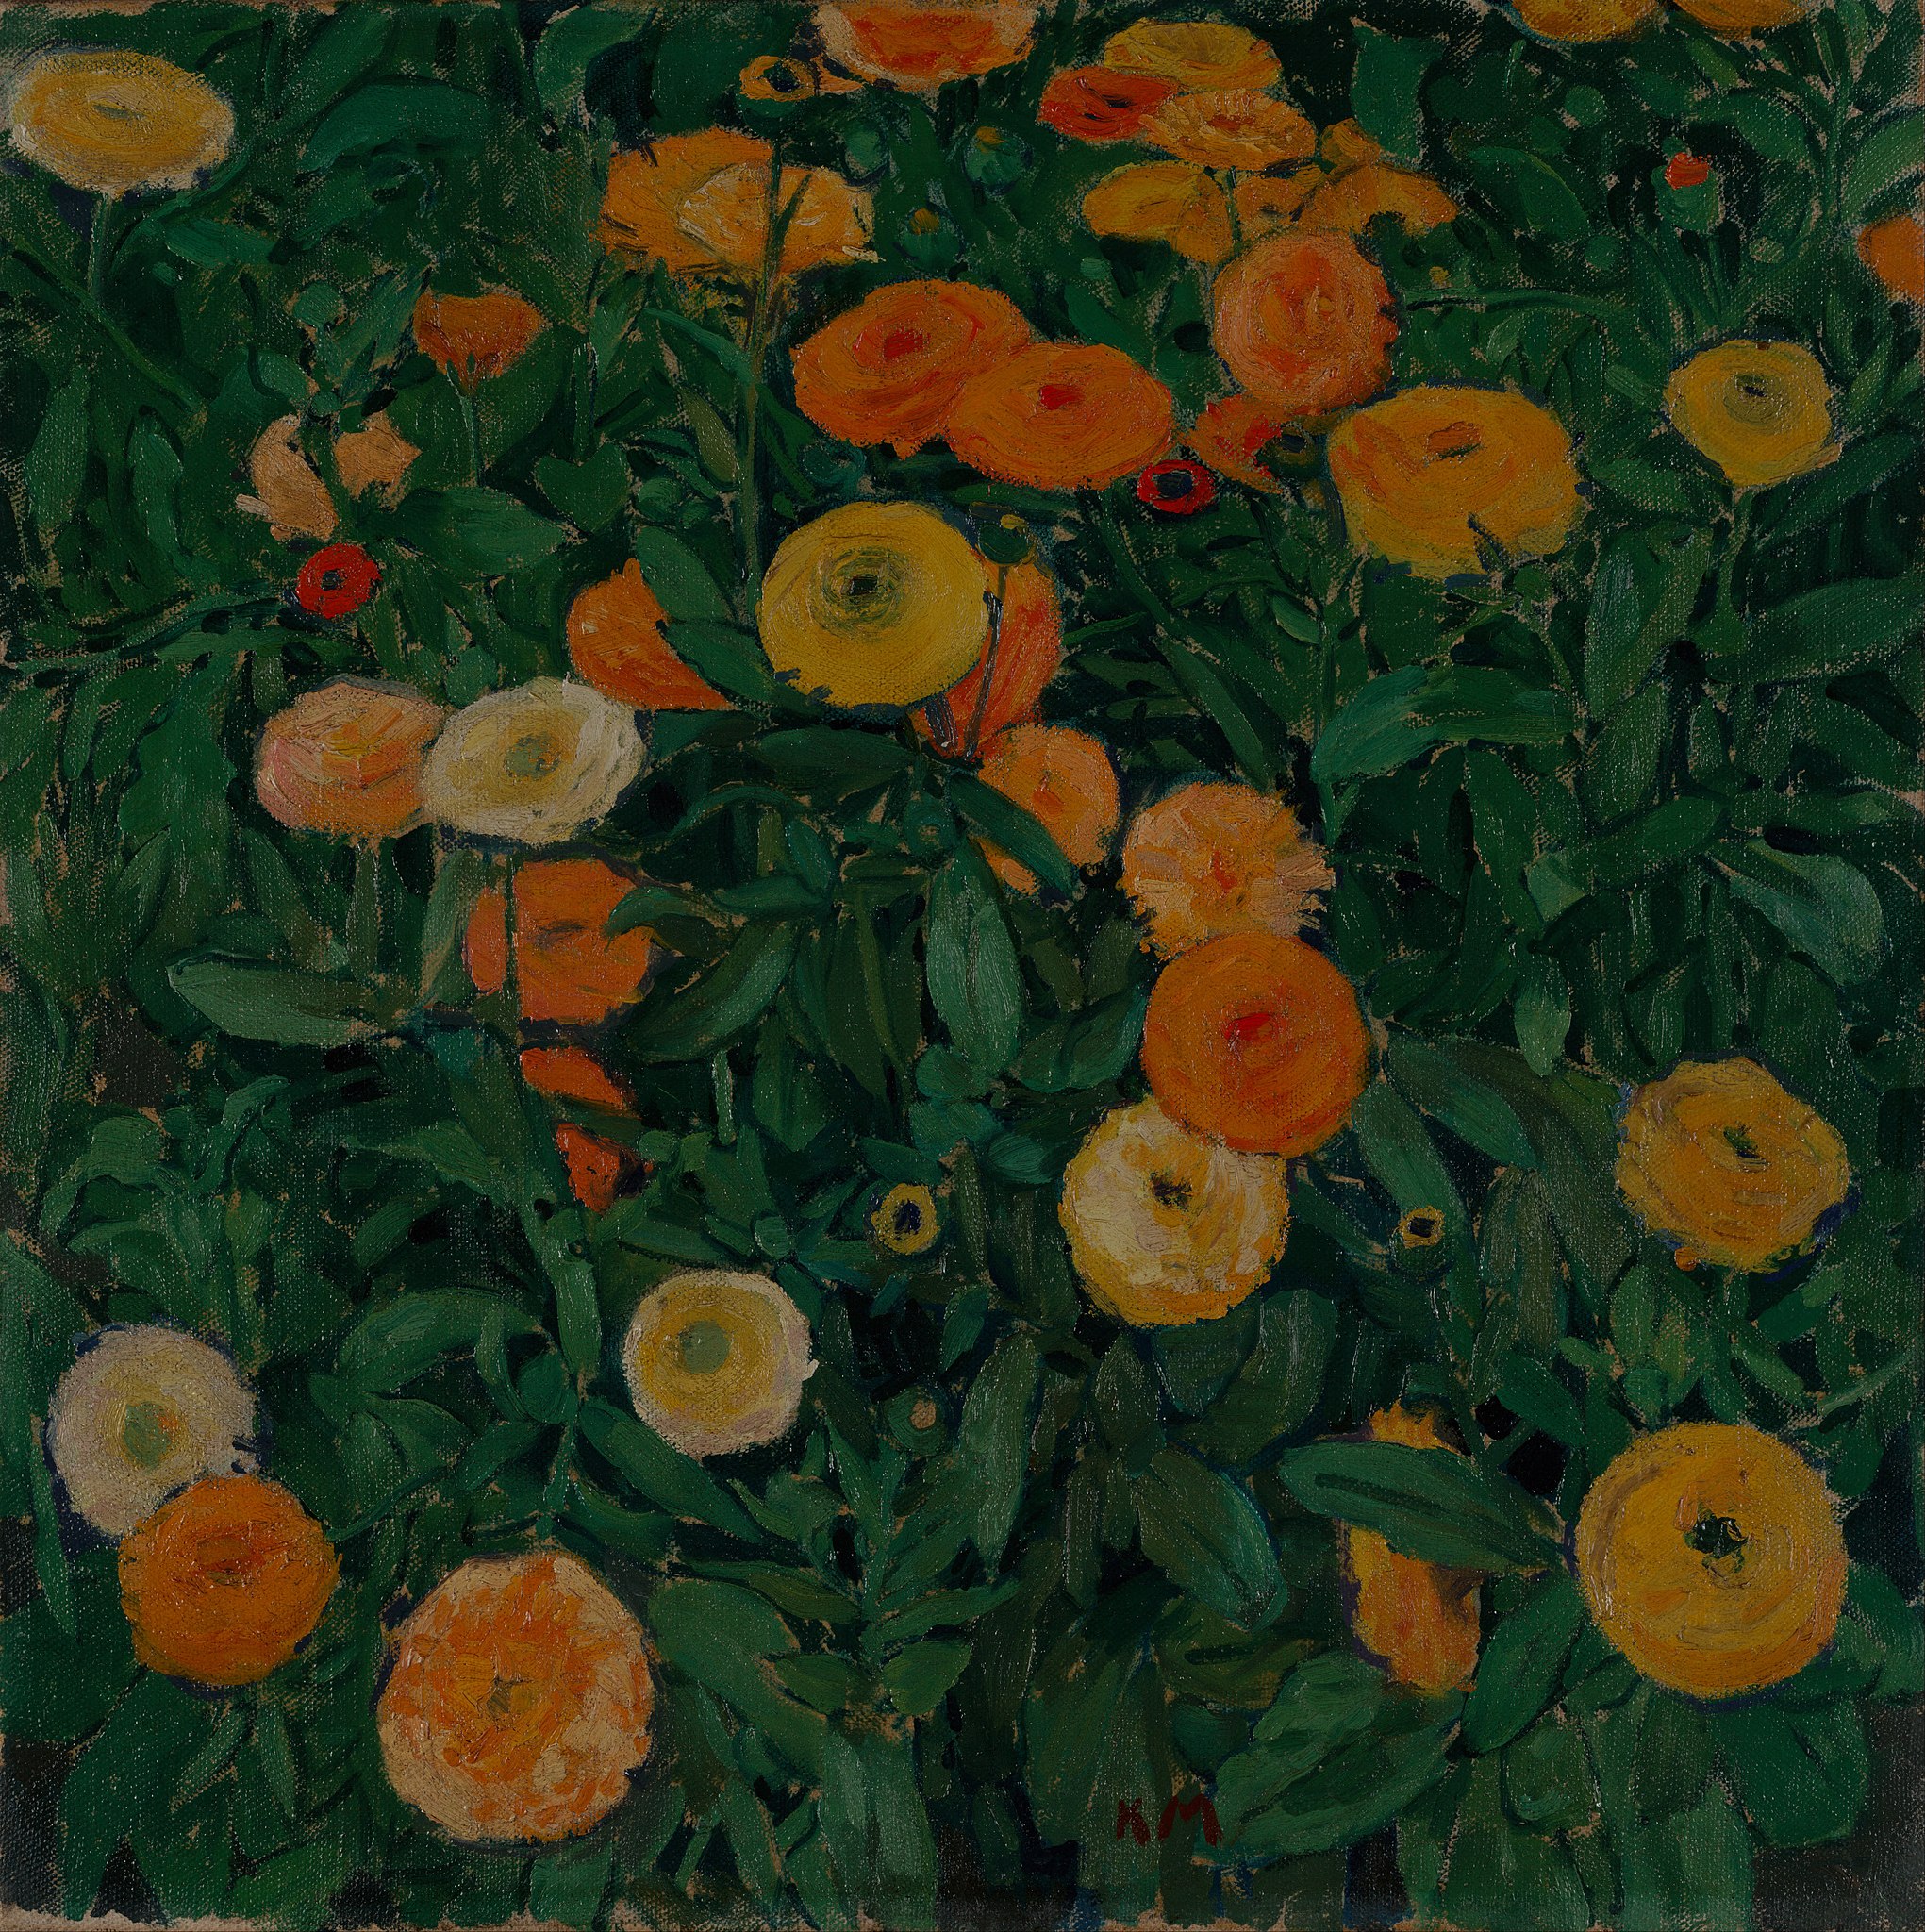 زهور المخملية by Koloman Moser - 1909 م - 50.2 x 50.3 سم 